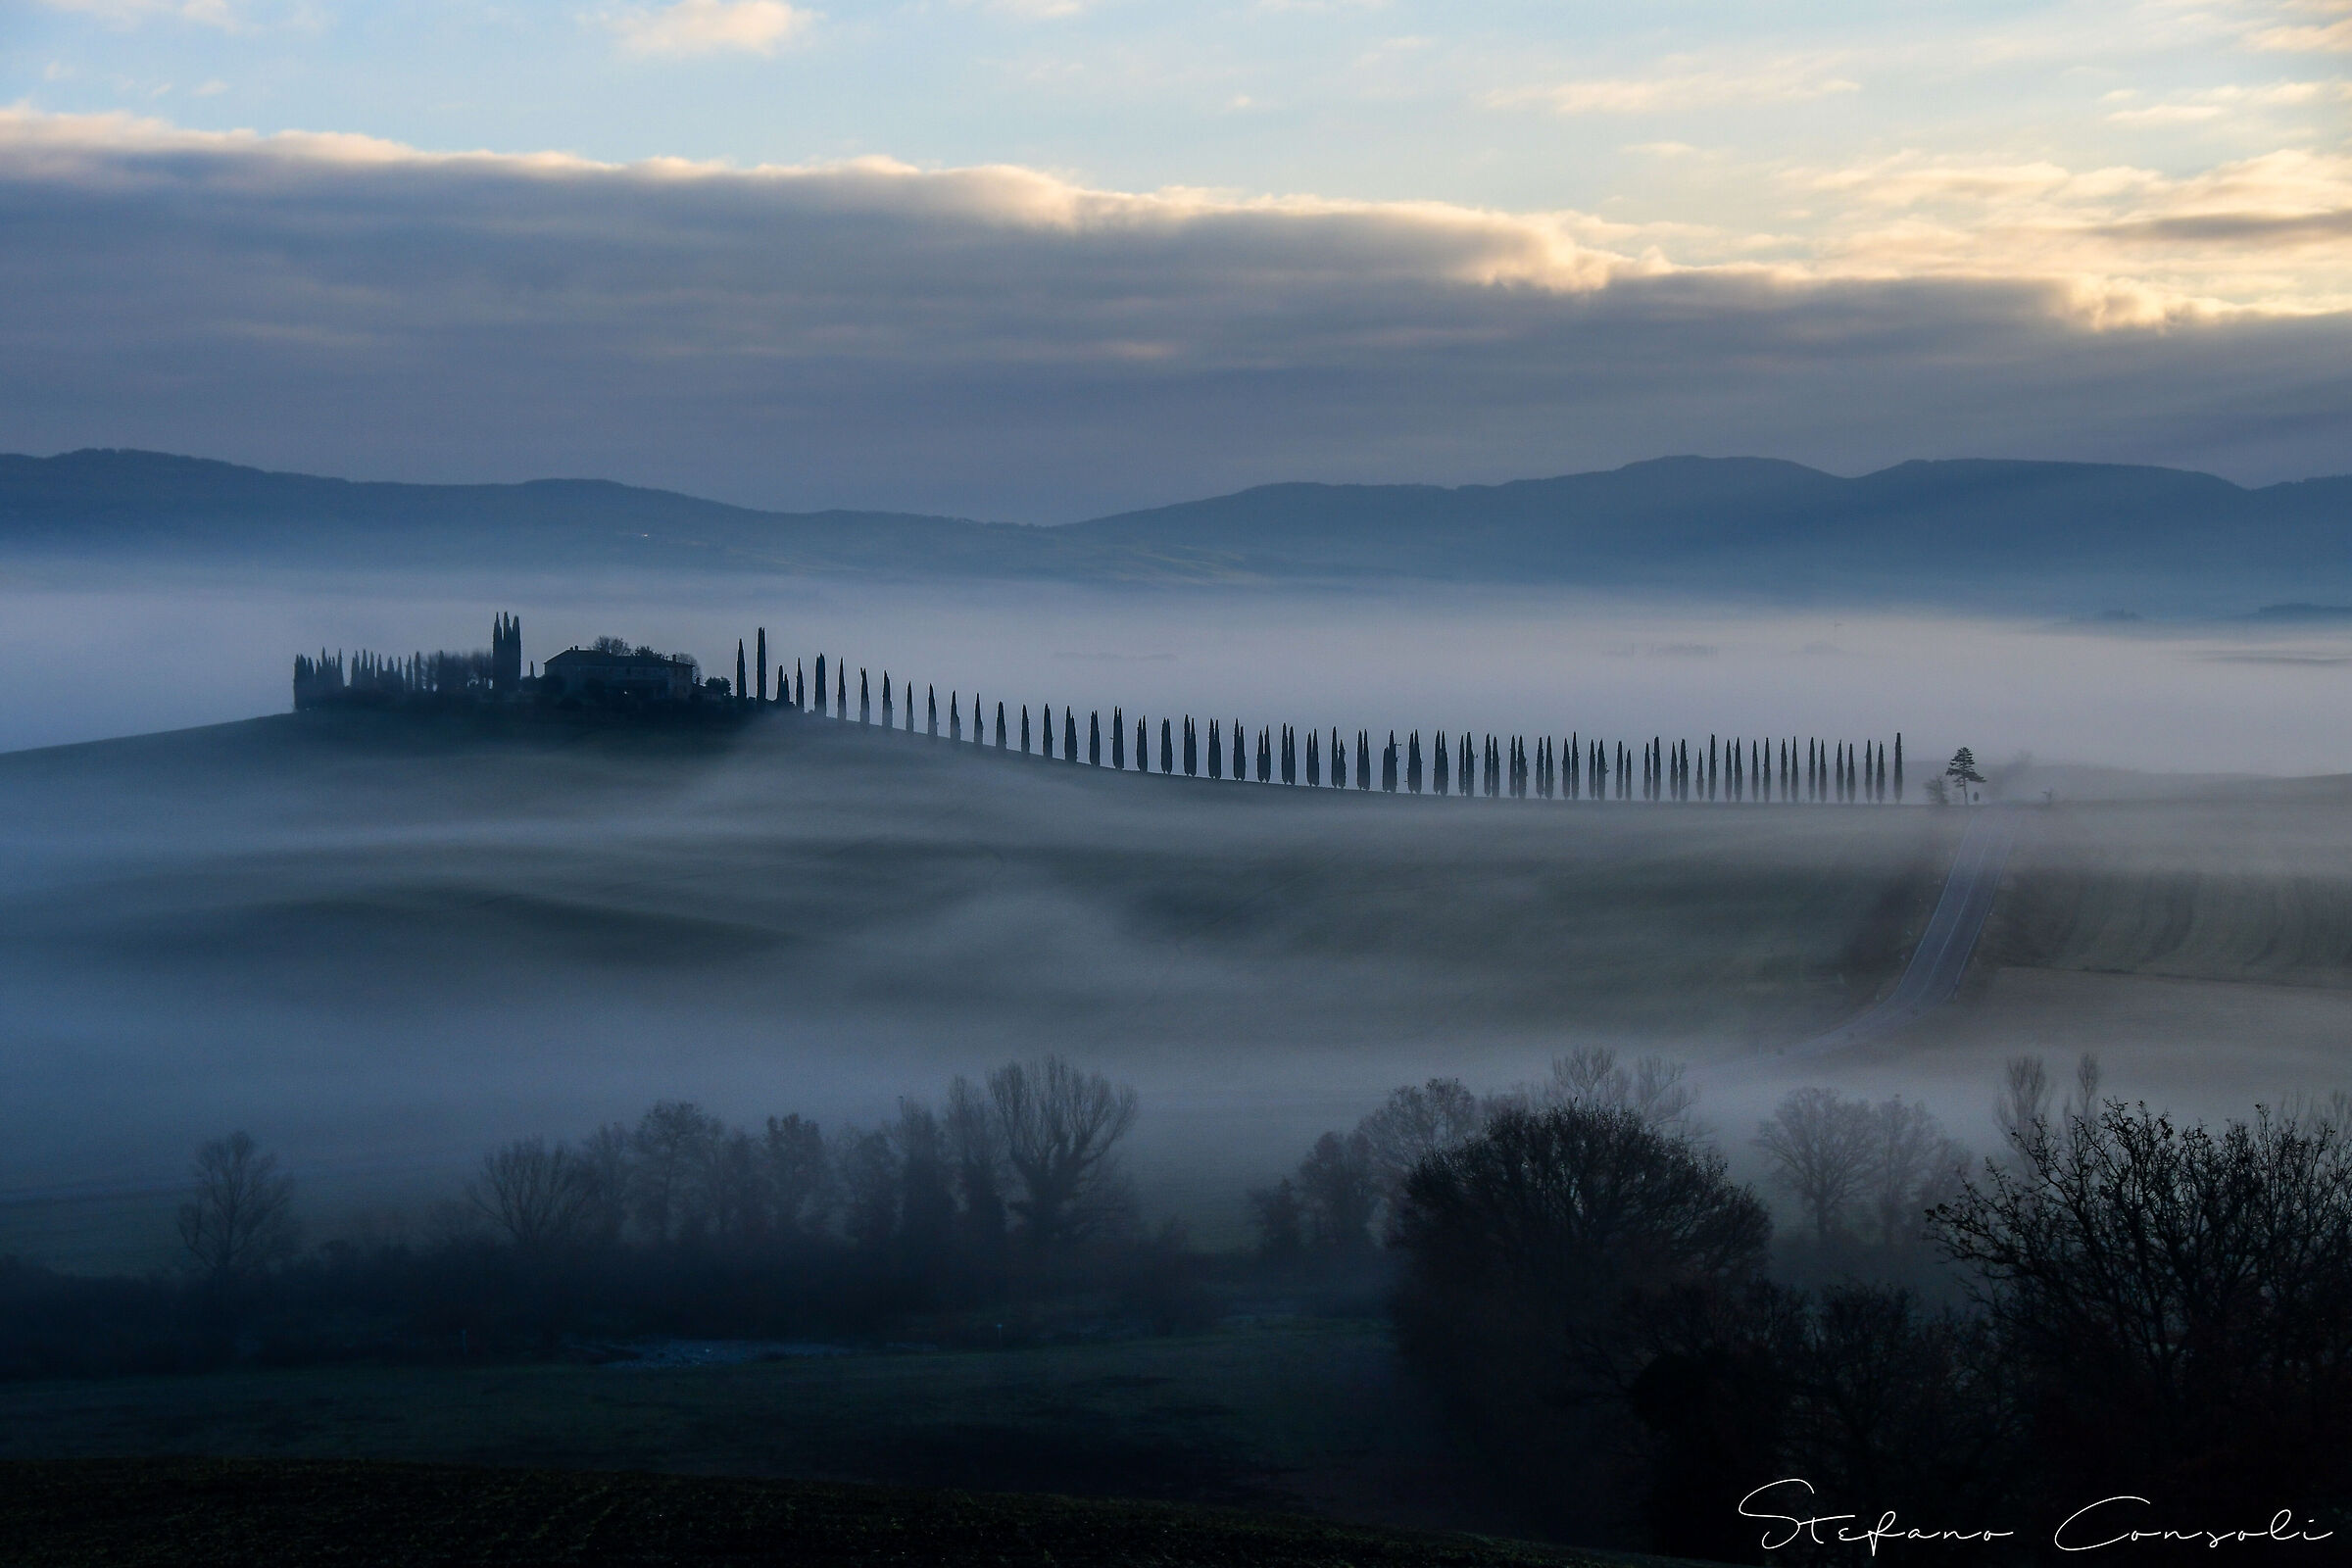 Poggio Covili at dawn with fog...